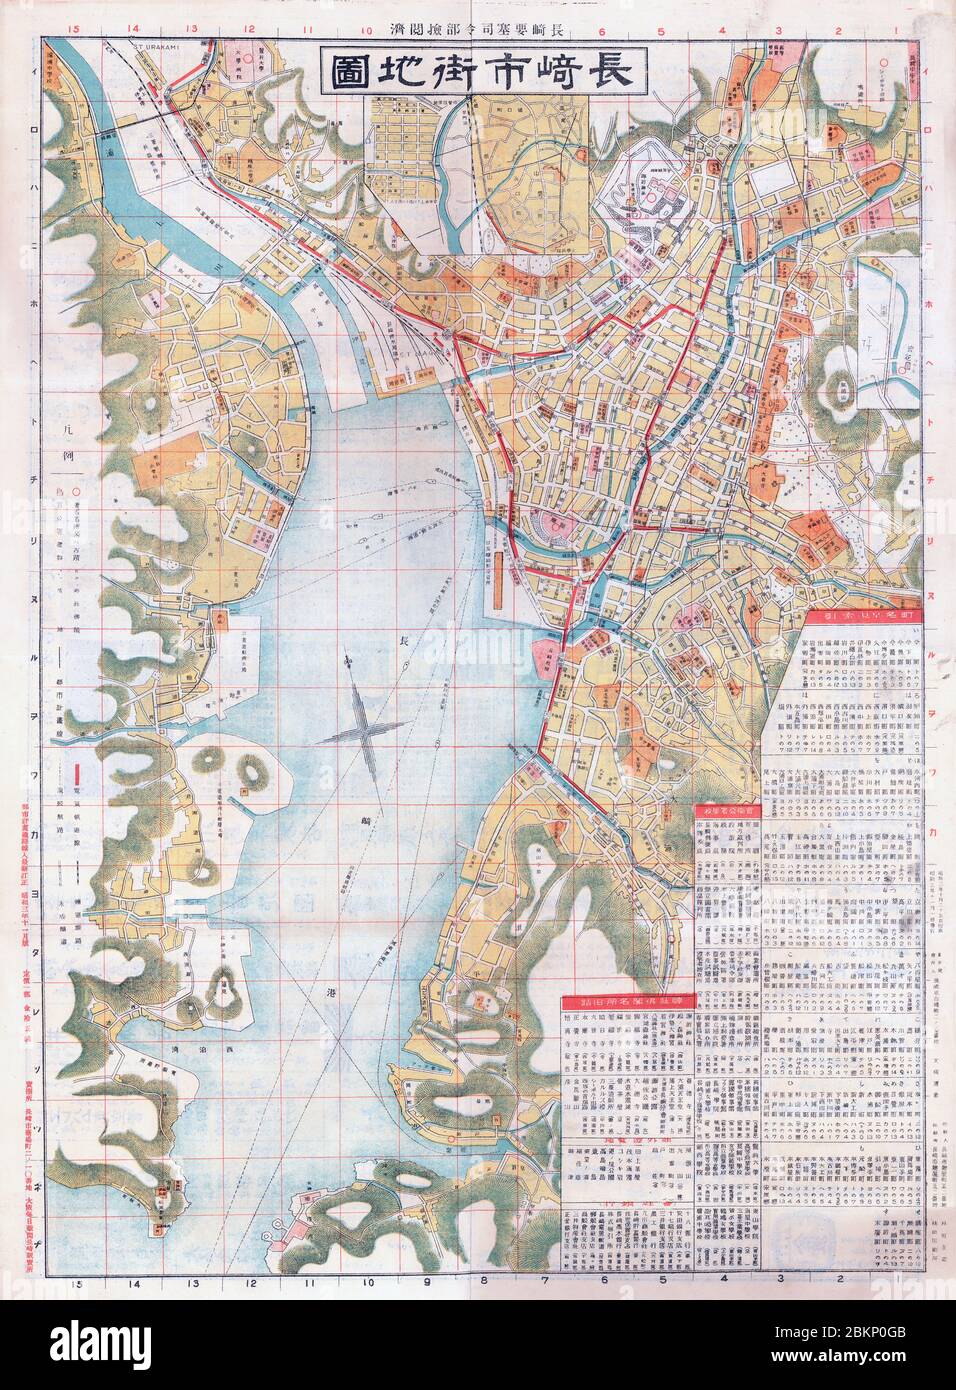 [ 1920er Jahre Japan - Karte von Nagasaki, 1928 ] - Karte von Nagasaki, gedruckt am 25. Oktober 1928 (Showa 3). Mit Bahnhöfen, Namen von Machi und großen Gebäuden. Mit 300 dpi ist die größte verfügbare Größe für diese Karte 141 MB, wobei die längste Seite 8,202 Pixel (86 cm oder 34 Zoll) beträgt. Bitte fragen Sie uns nach Preisen, wenn Sie diese große Größe benötigen. Vintage-Karte des 20. Jahrhunderts. Stockfoto